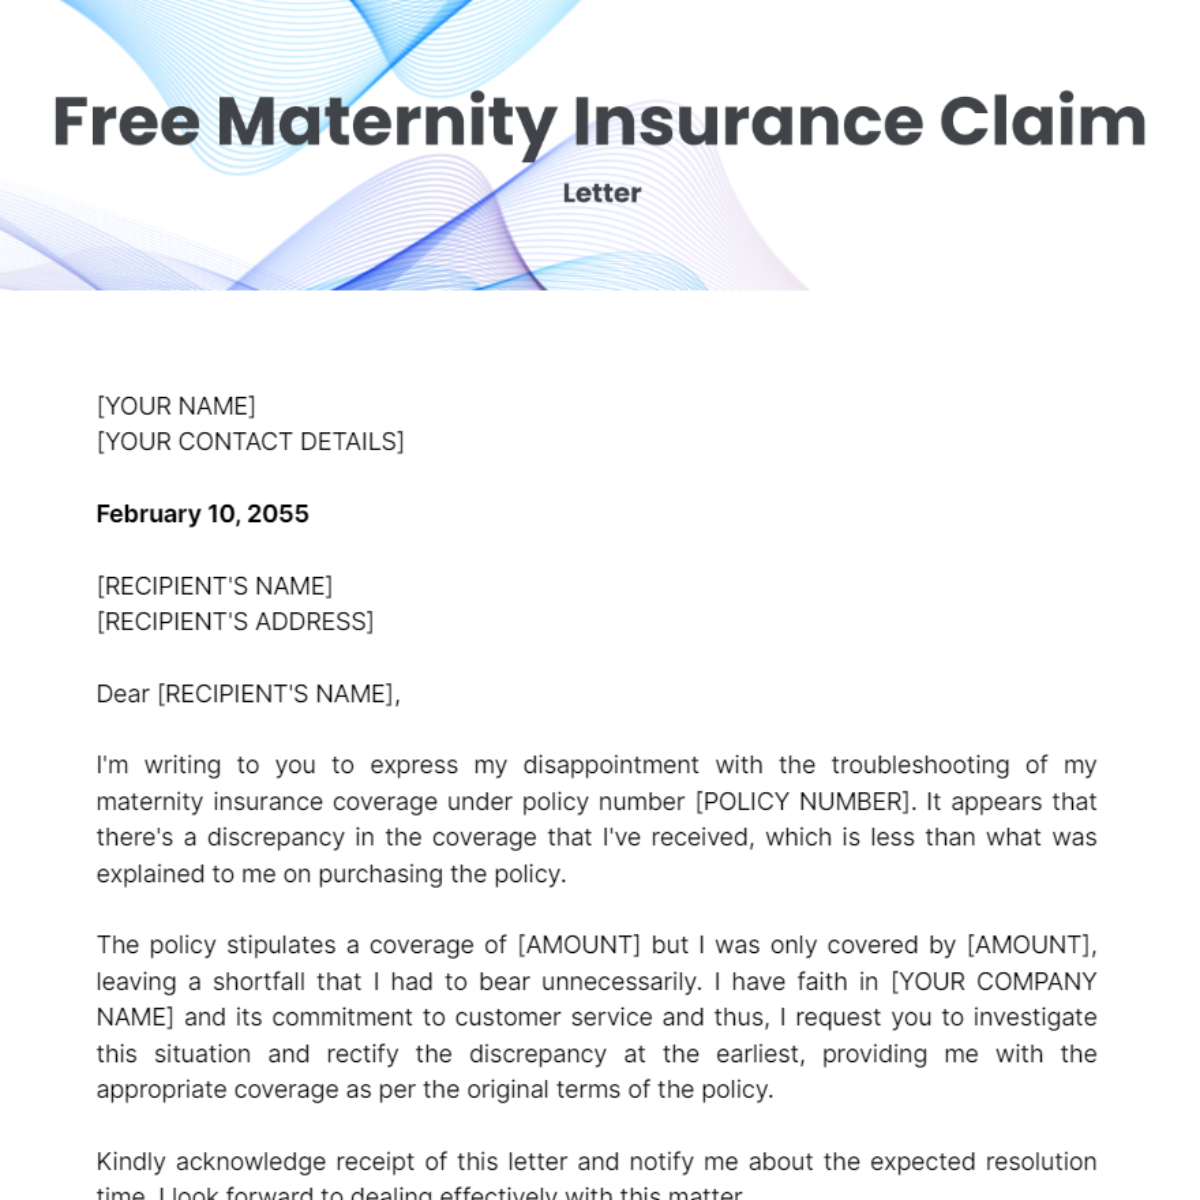 https://images.template.net/291019/Maternity-Insurance-Claim-Letter-edit-online-1.jpg